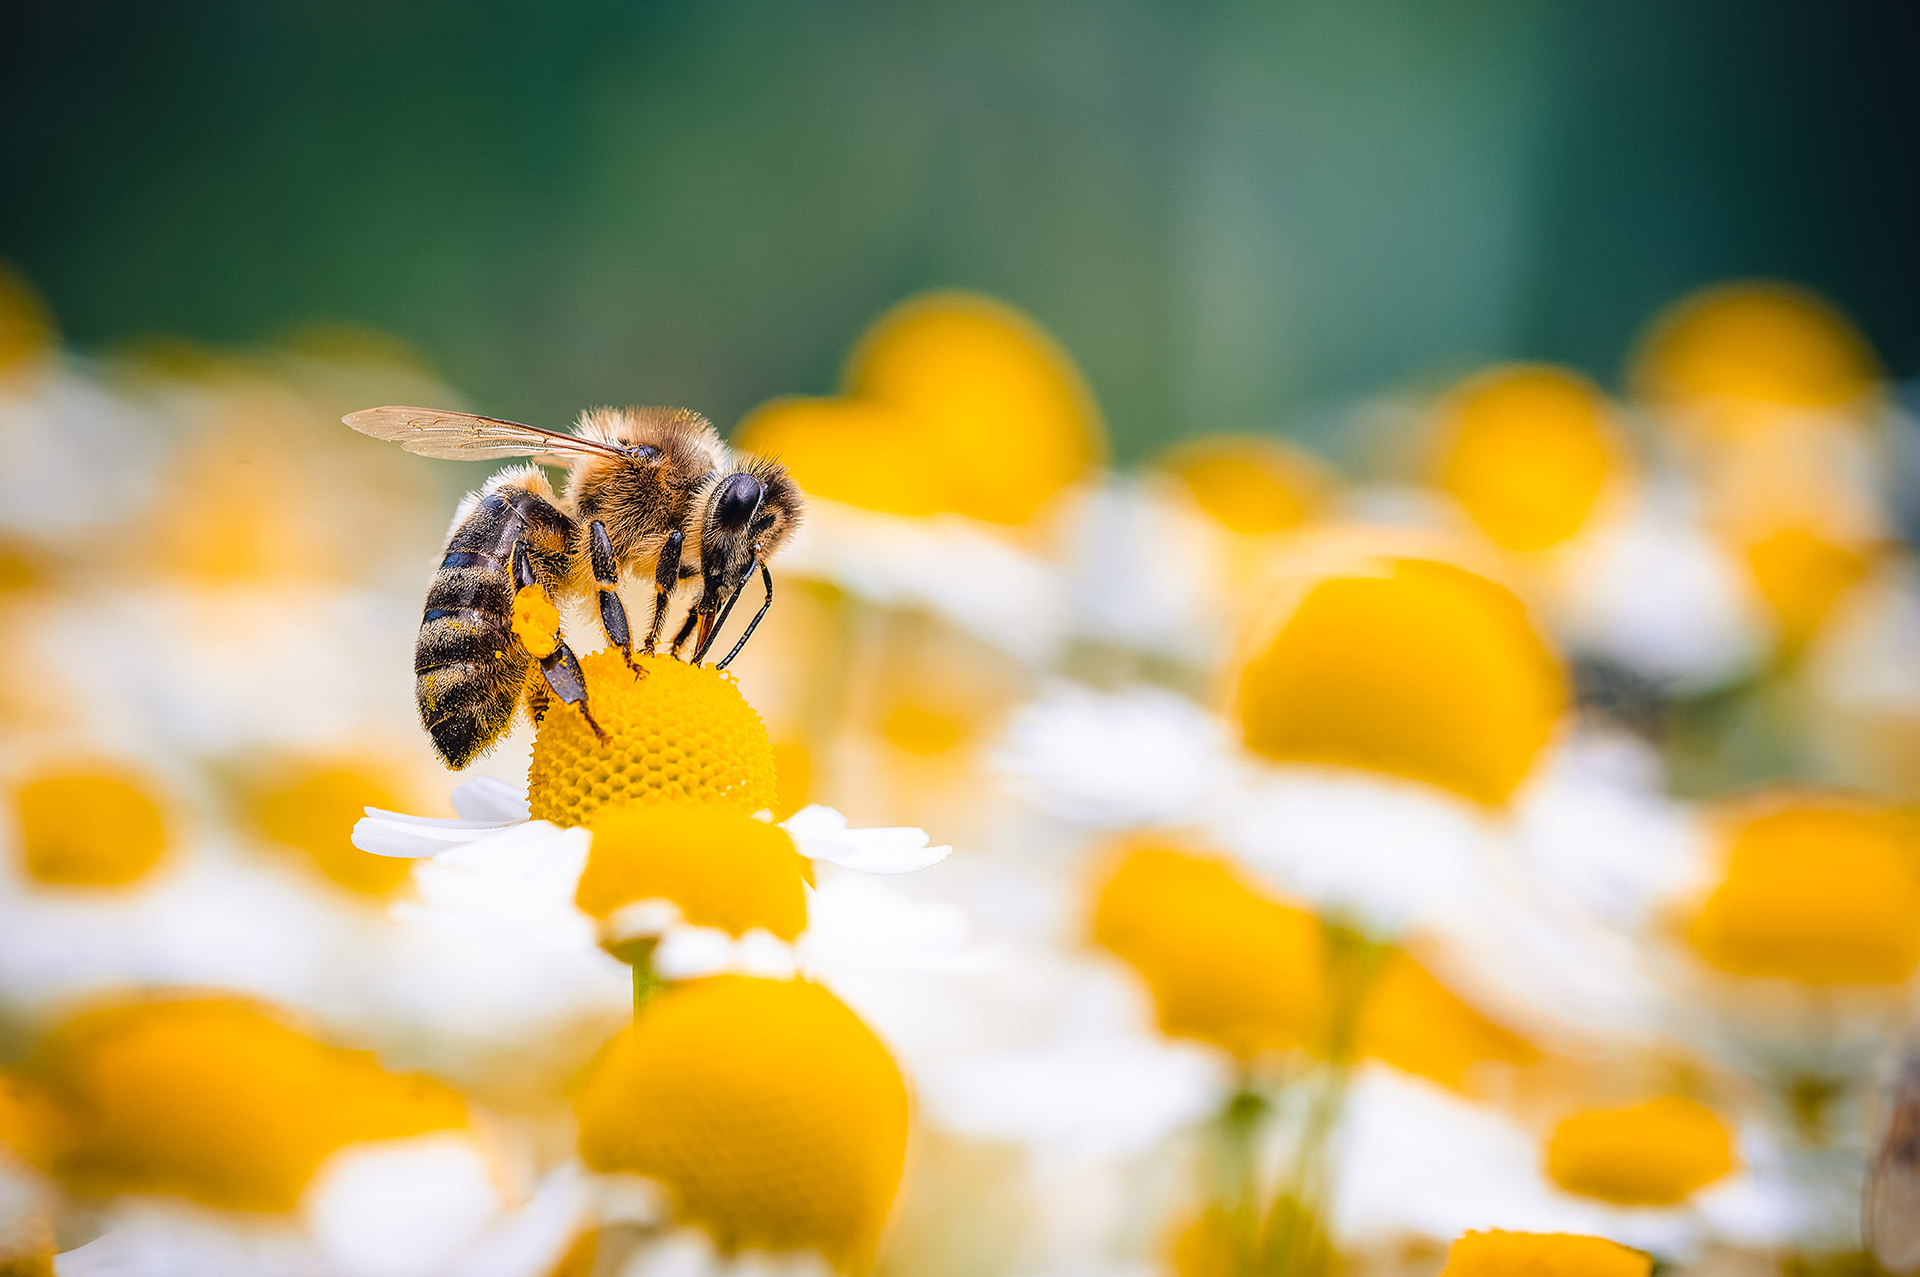 L’abeille est-elle électrosensible ? (Partie 1)